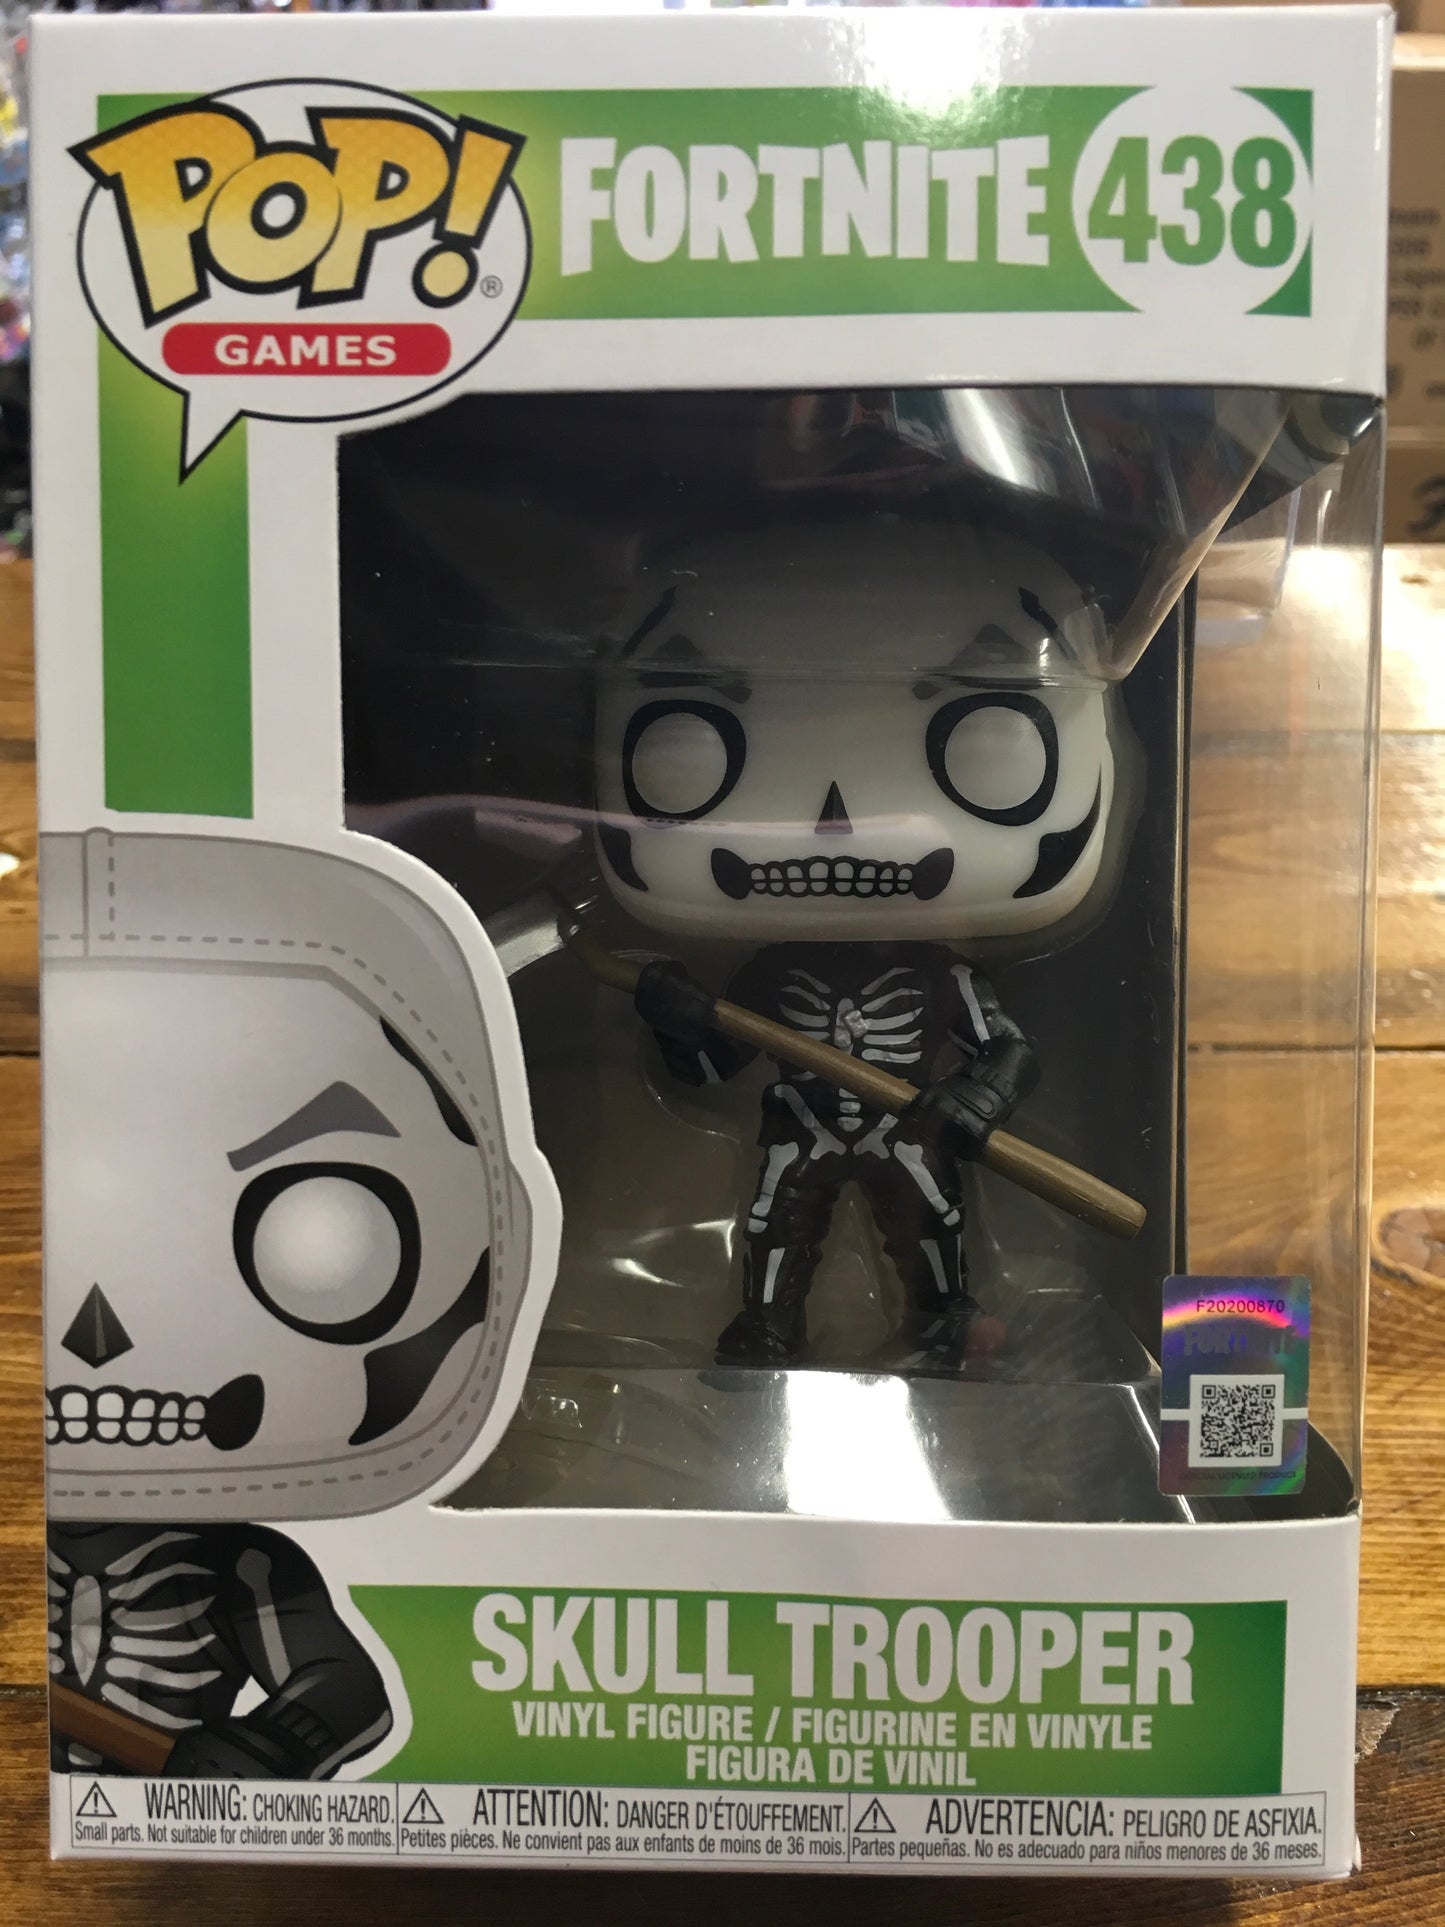 Fortnite Skull Trooper #438 Games Funko Pop! Vinyl Figure